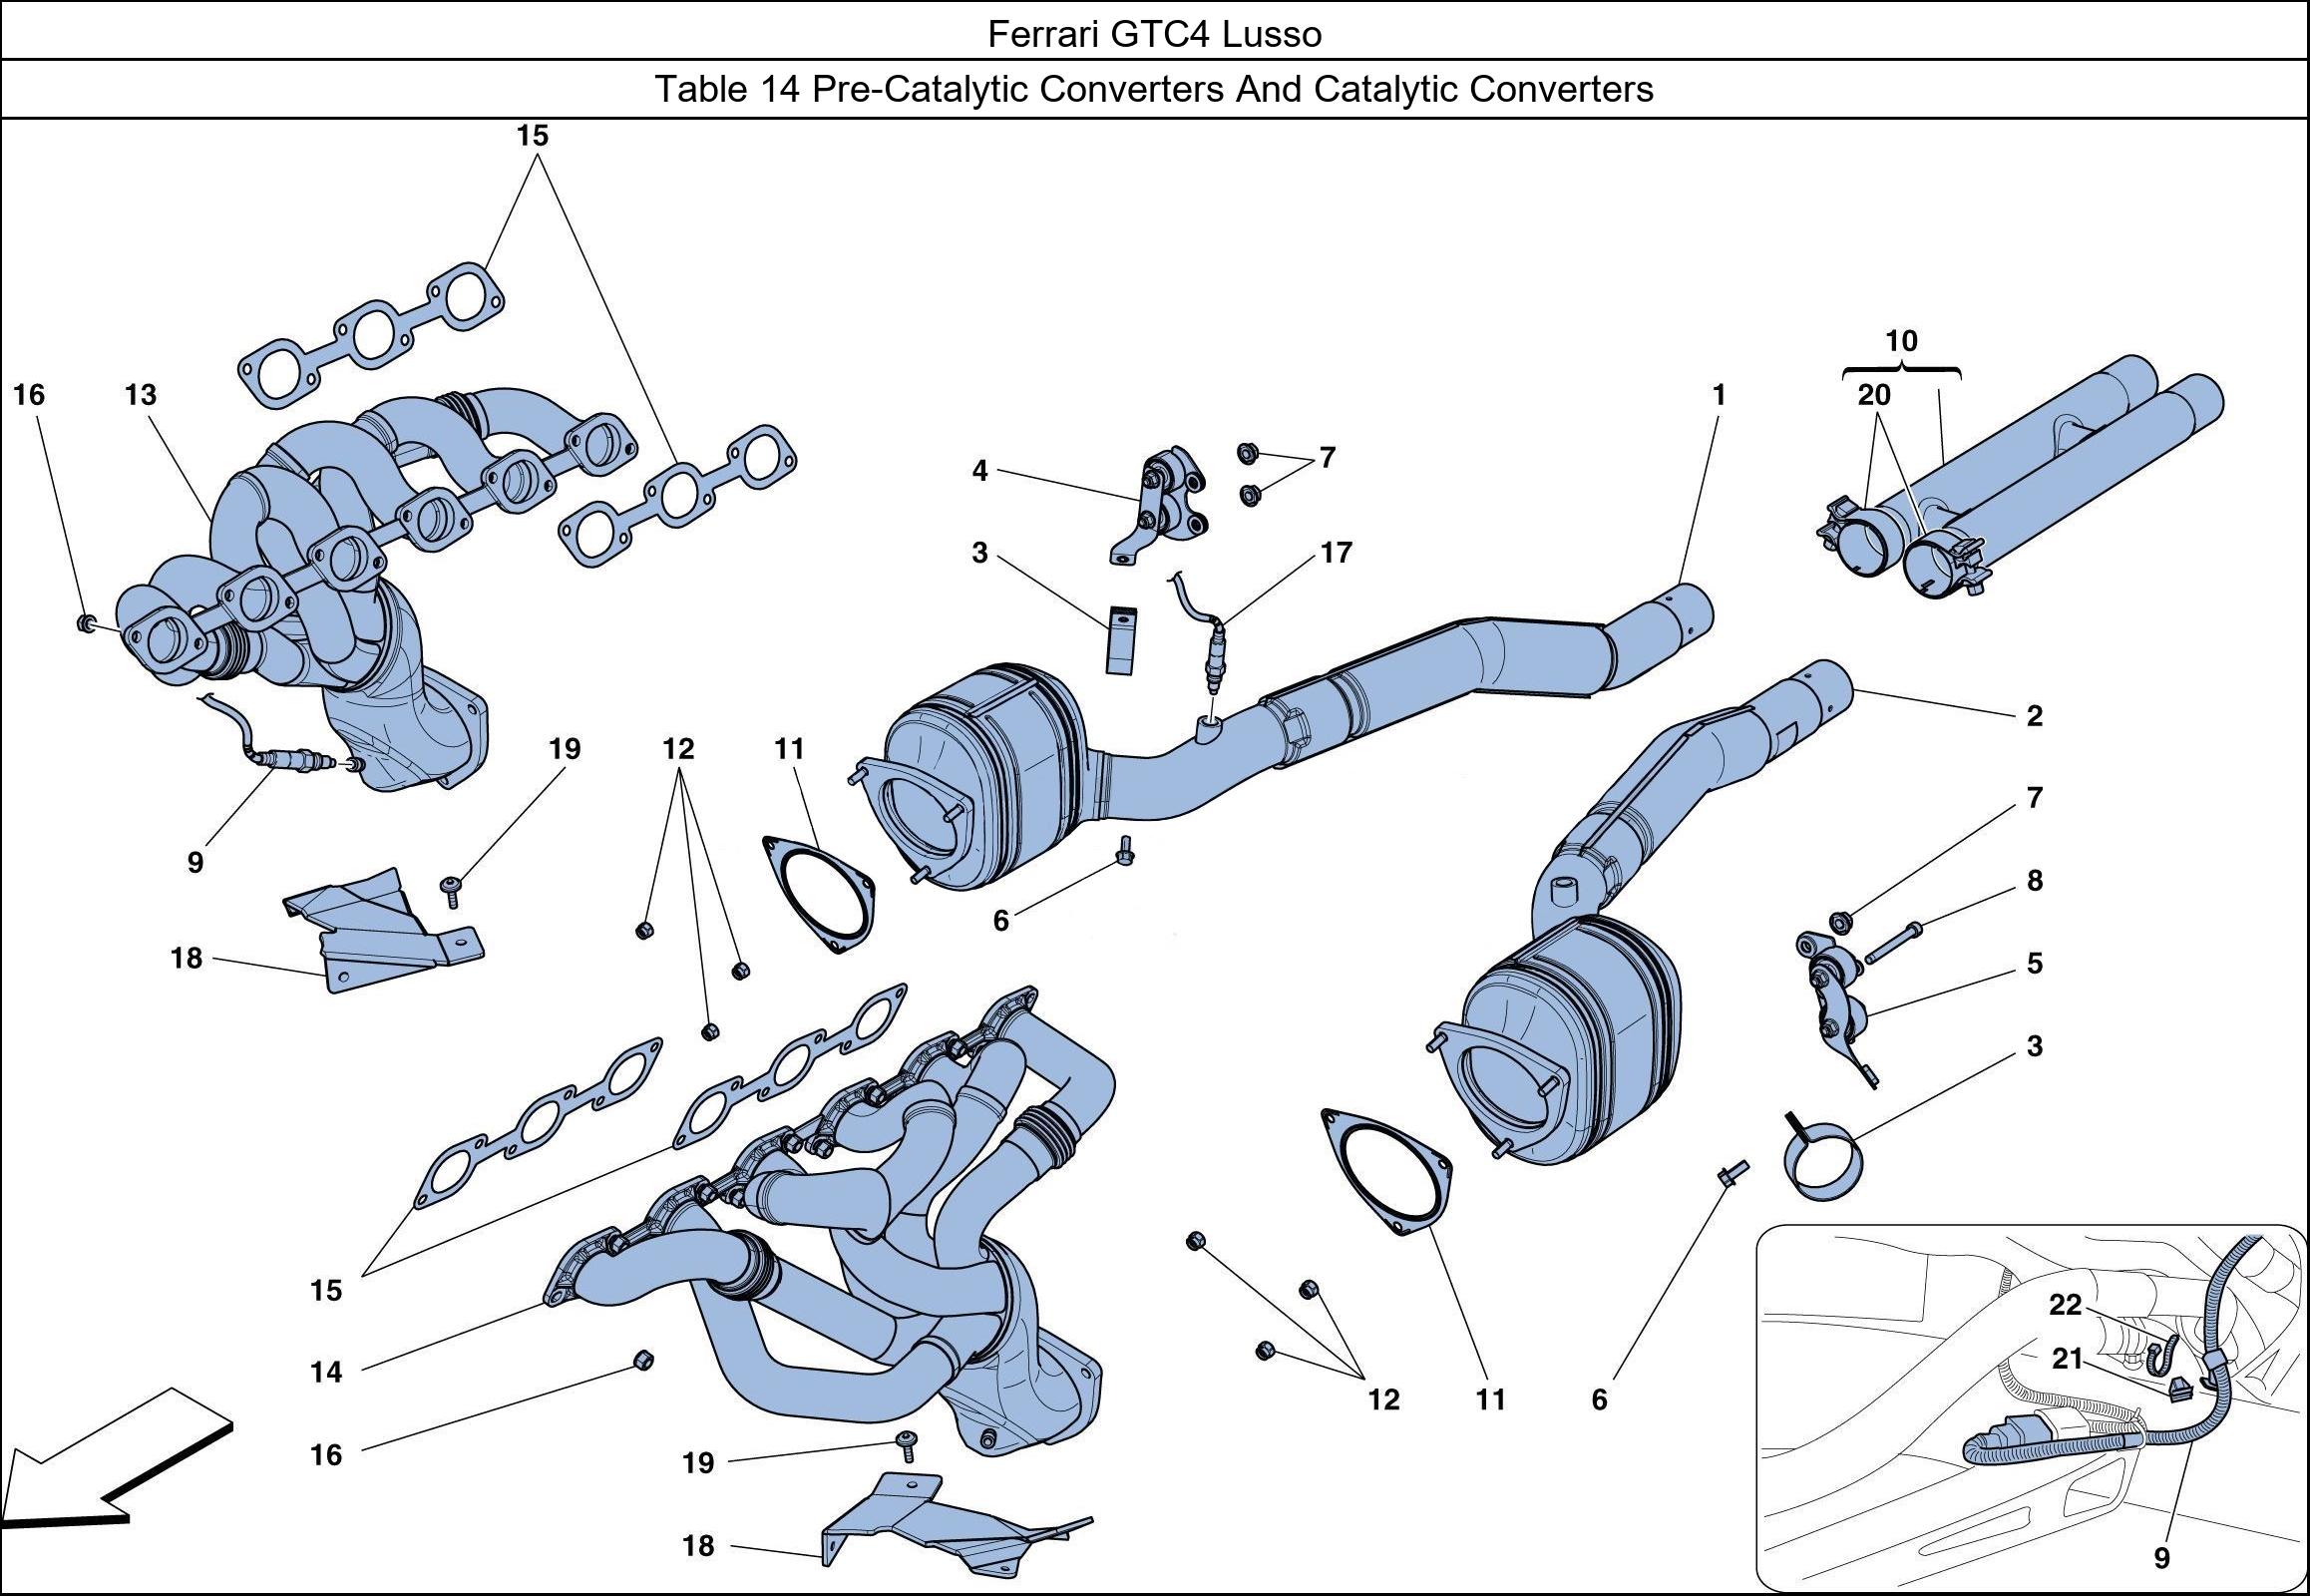 Ferrari Parts Ferrari GTC4 Lusso Table 14 Pre-Catalytic Converters And Catalytic Converters